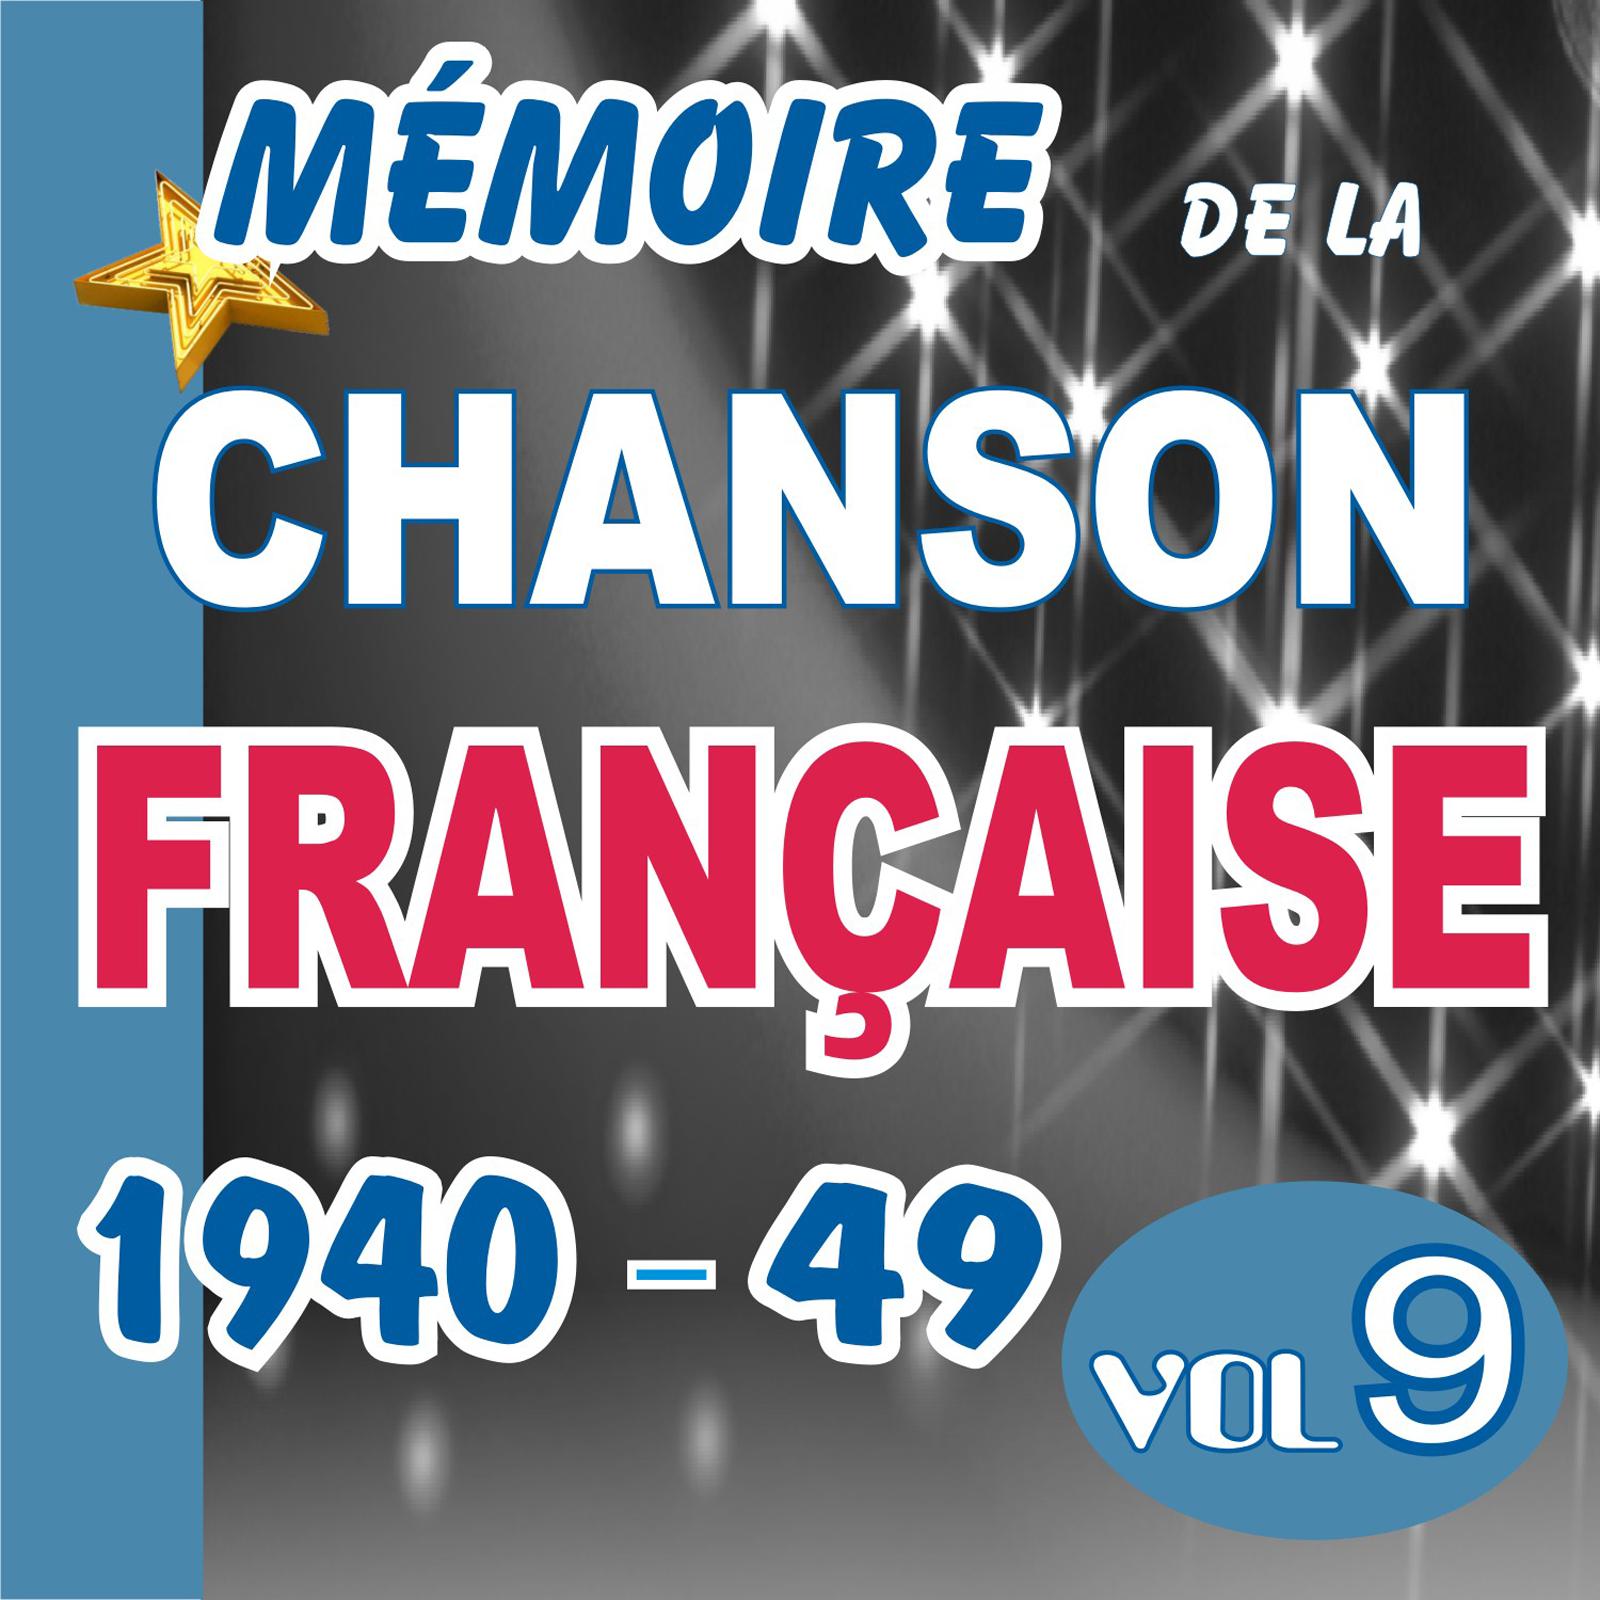 MEMOIRE DE LA CHANSON FRANCAISE DE 1940 A 1949 - VOL 9